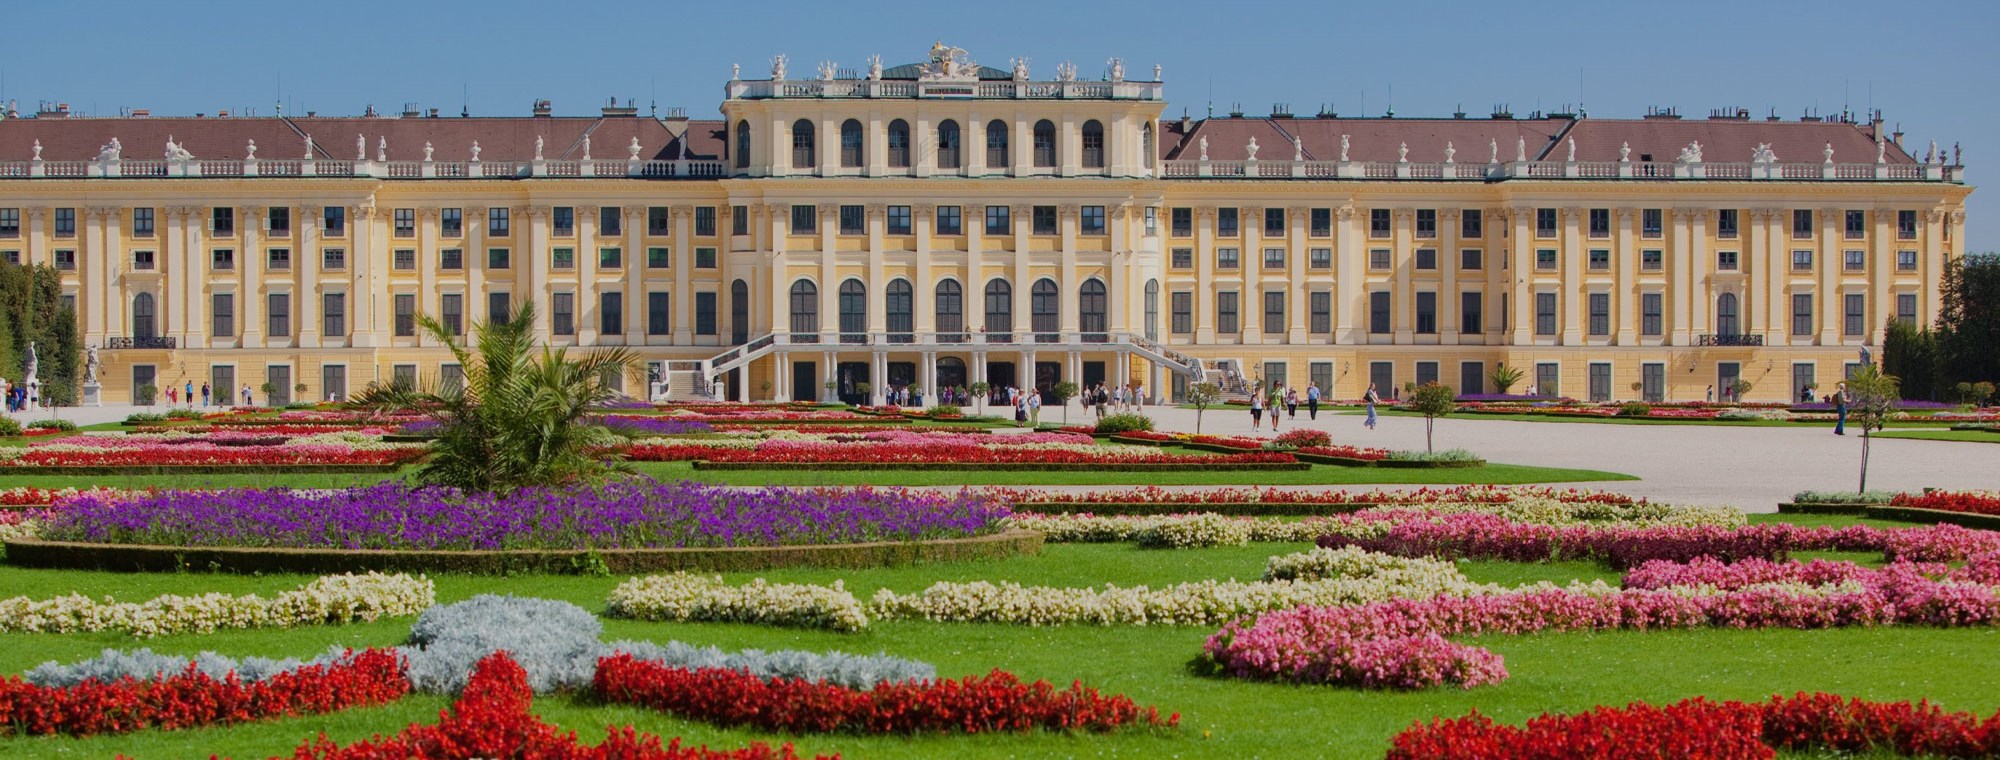 Austria Vienna Schoenbrunn Palace